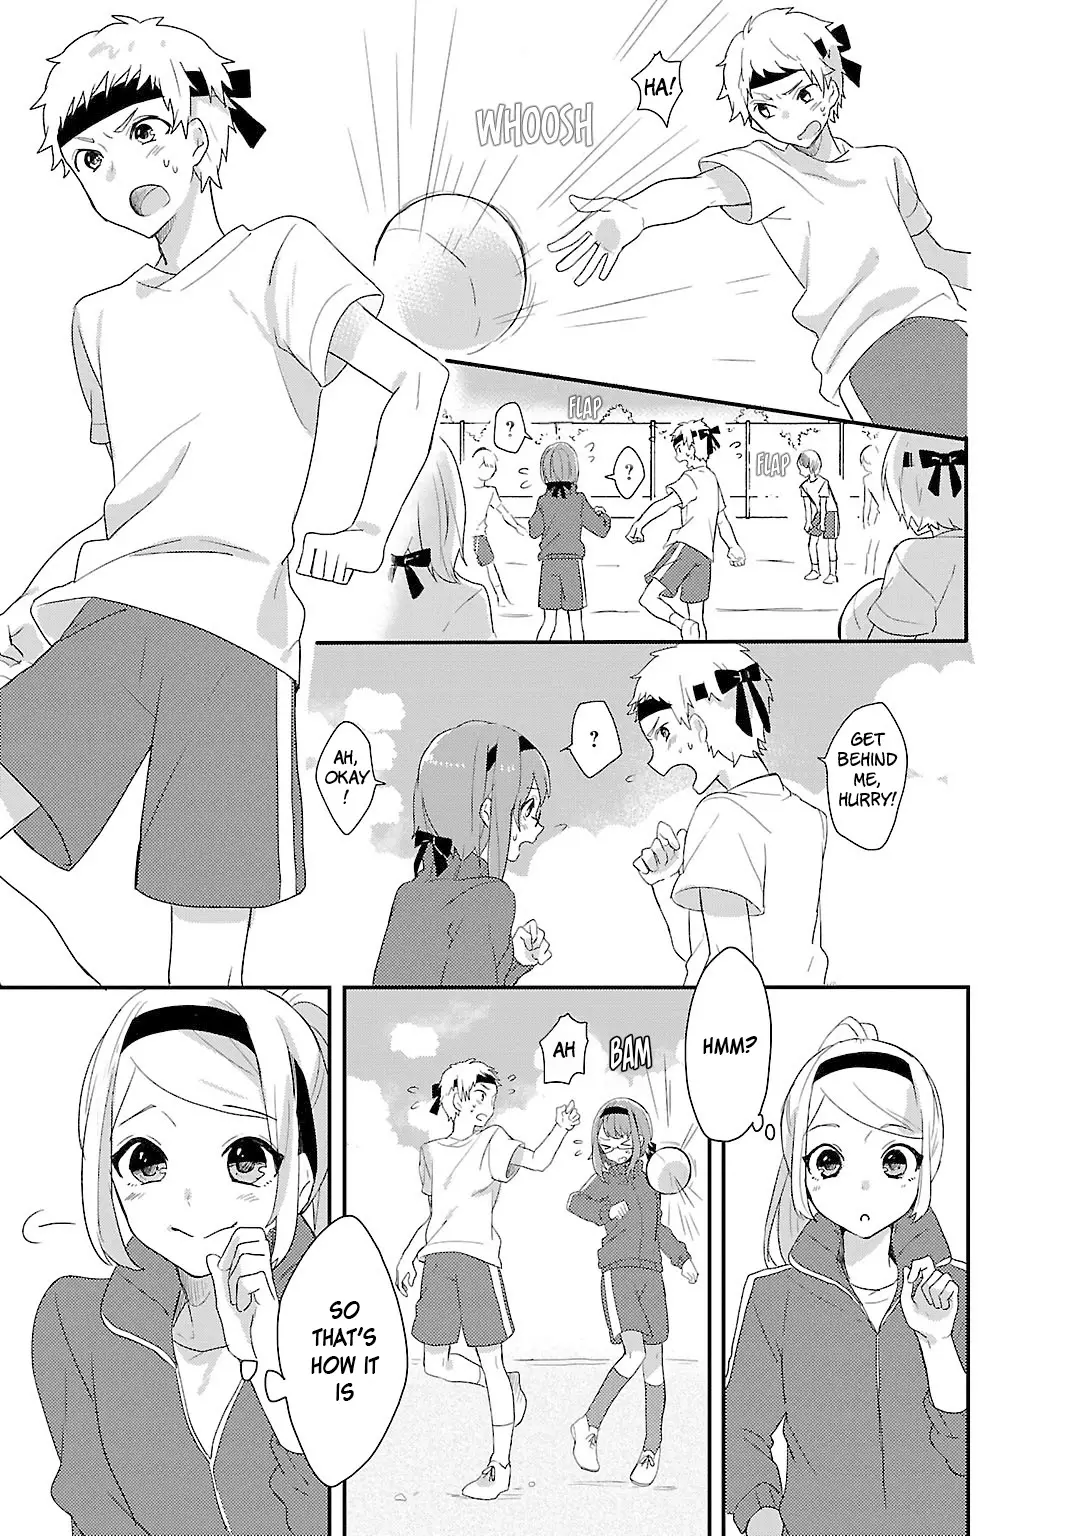 Shiryoku Kensa - 9 page 7-24115c2e